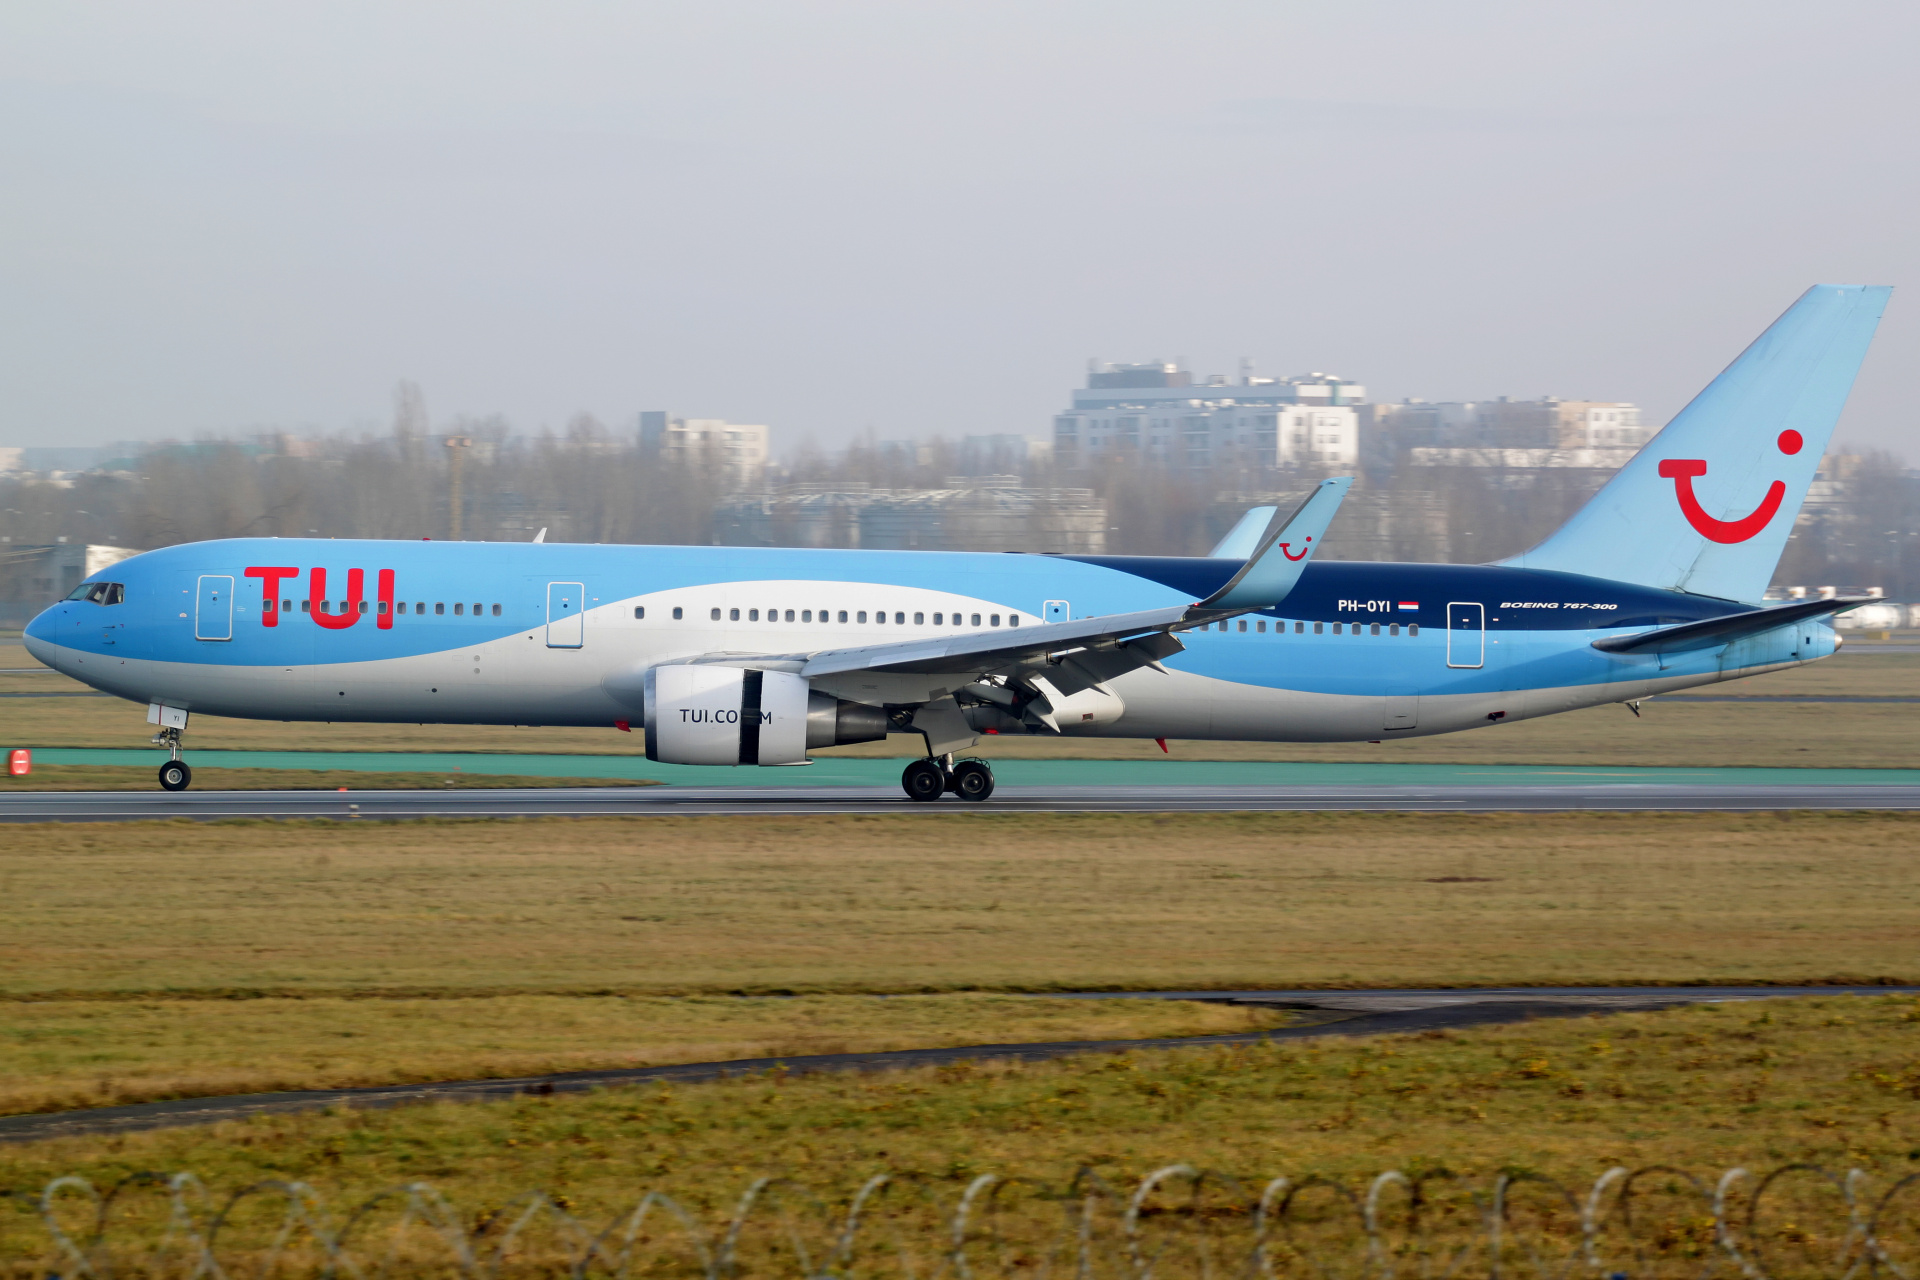 PH-OYI (Aircraft » EPWA Spotting » Boeing 767-300 » TUI fly Netherlands)